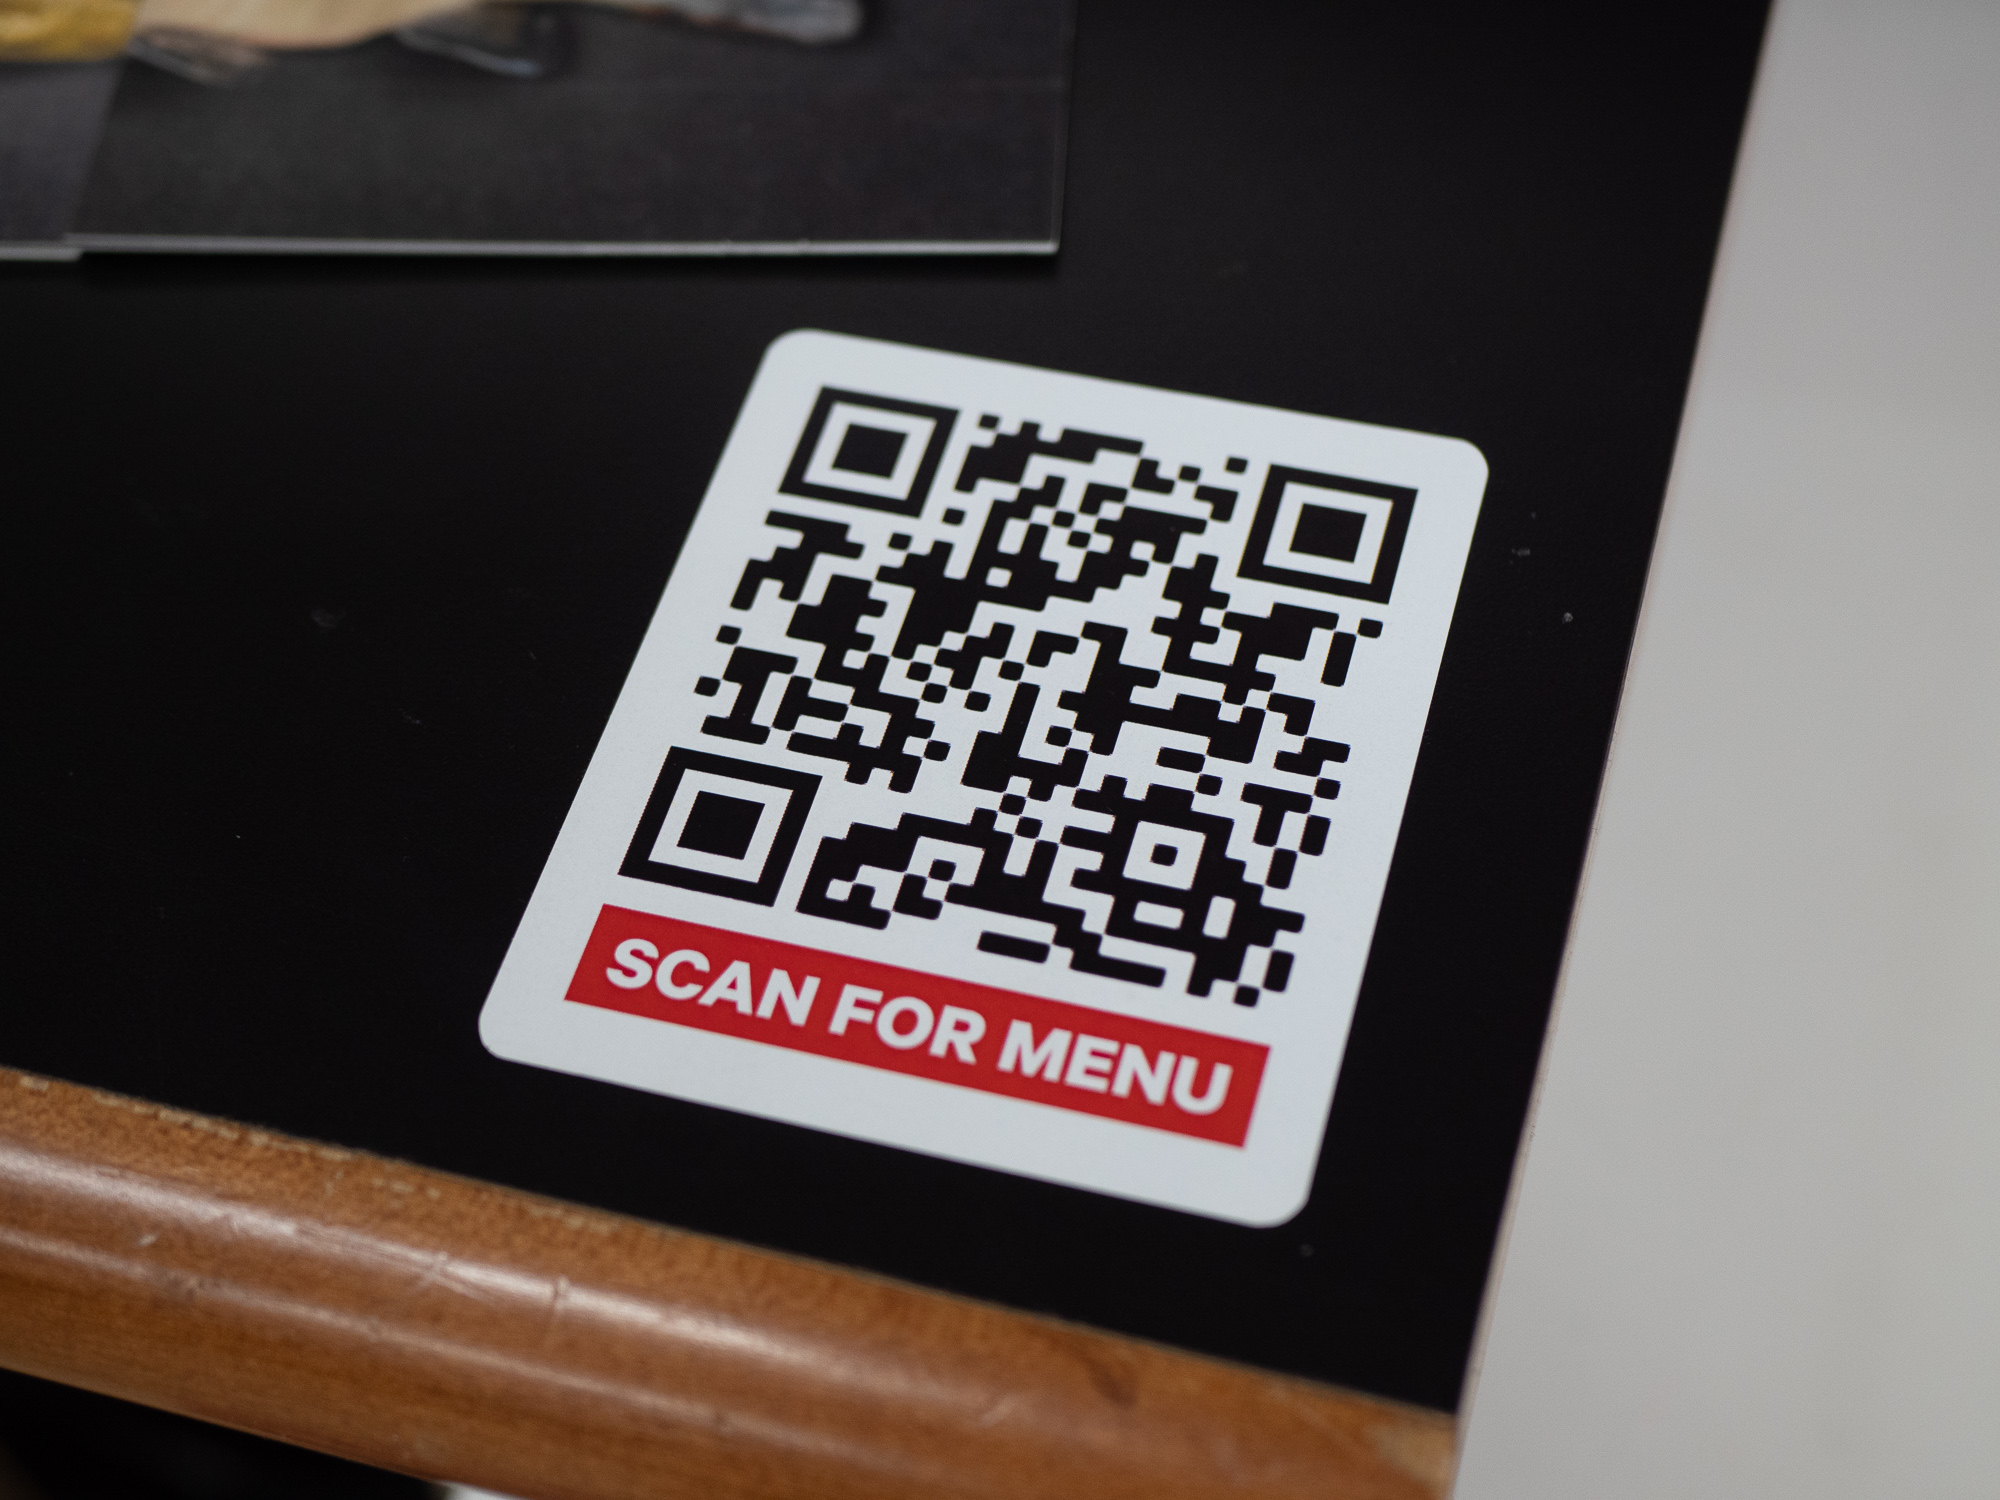 Qr код пабг. Наклейка с QR кодом. Наклейки для QR кодов. QR коды в ресторанах. Наклейка с ЙК кодом на стол.